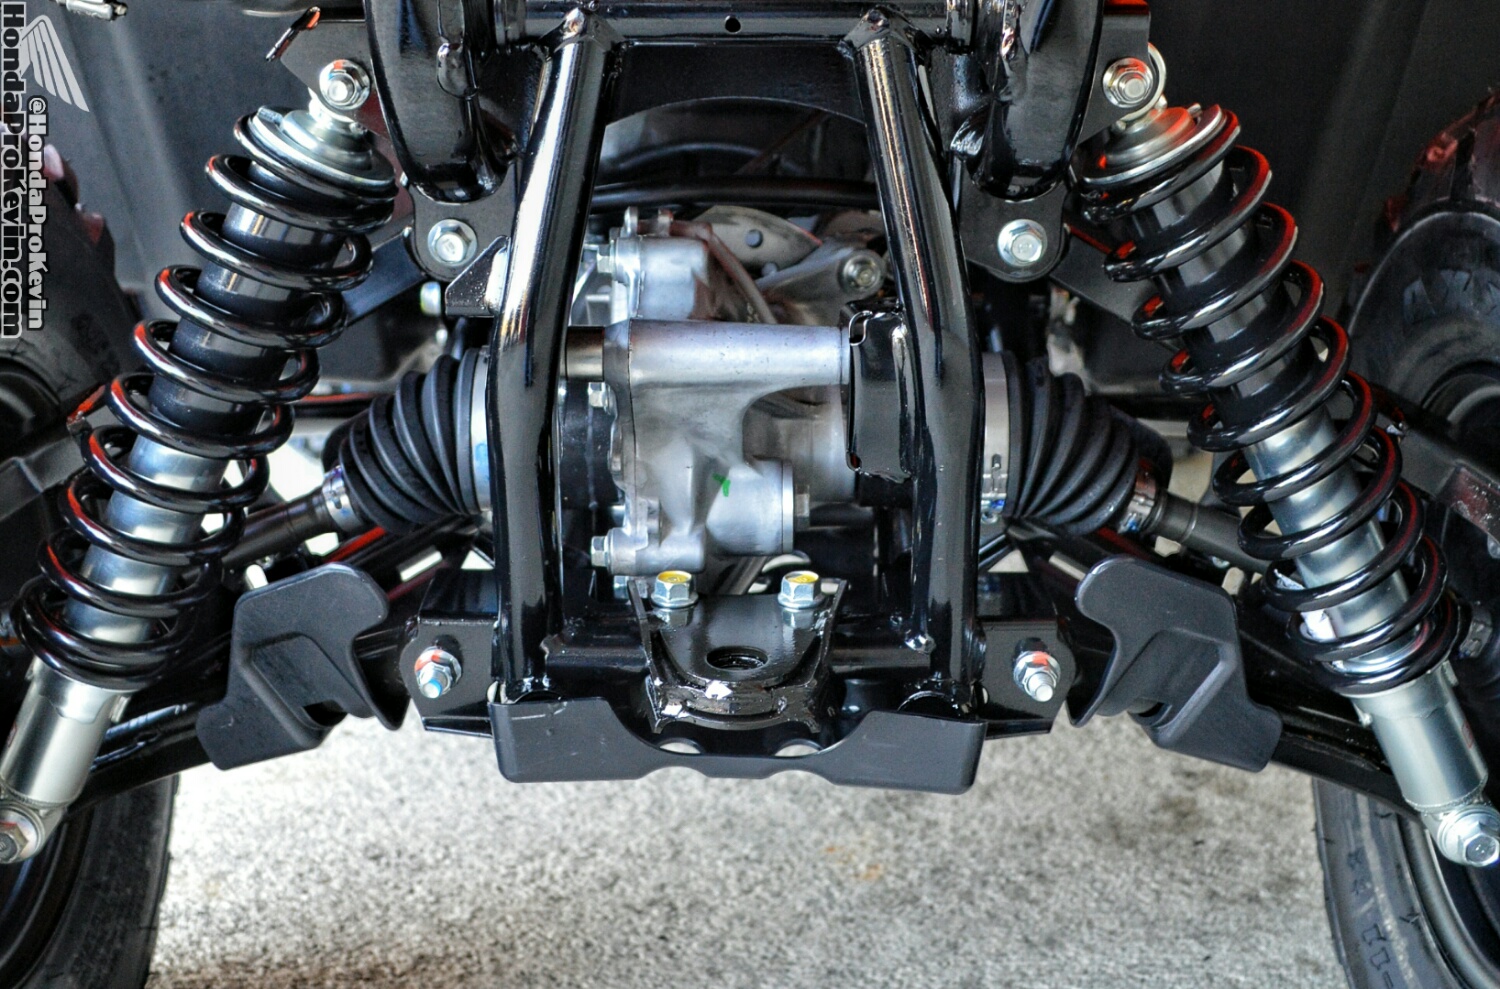 2019 Honda Rancher 420 DCT / IRS ATV Review of Specs - Four Wheeler 4x4 Quad TRX420